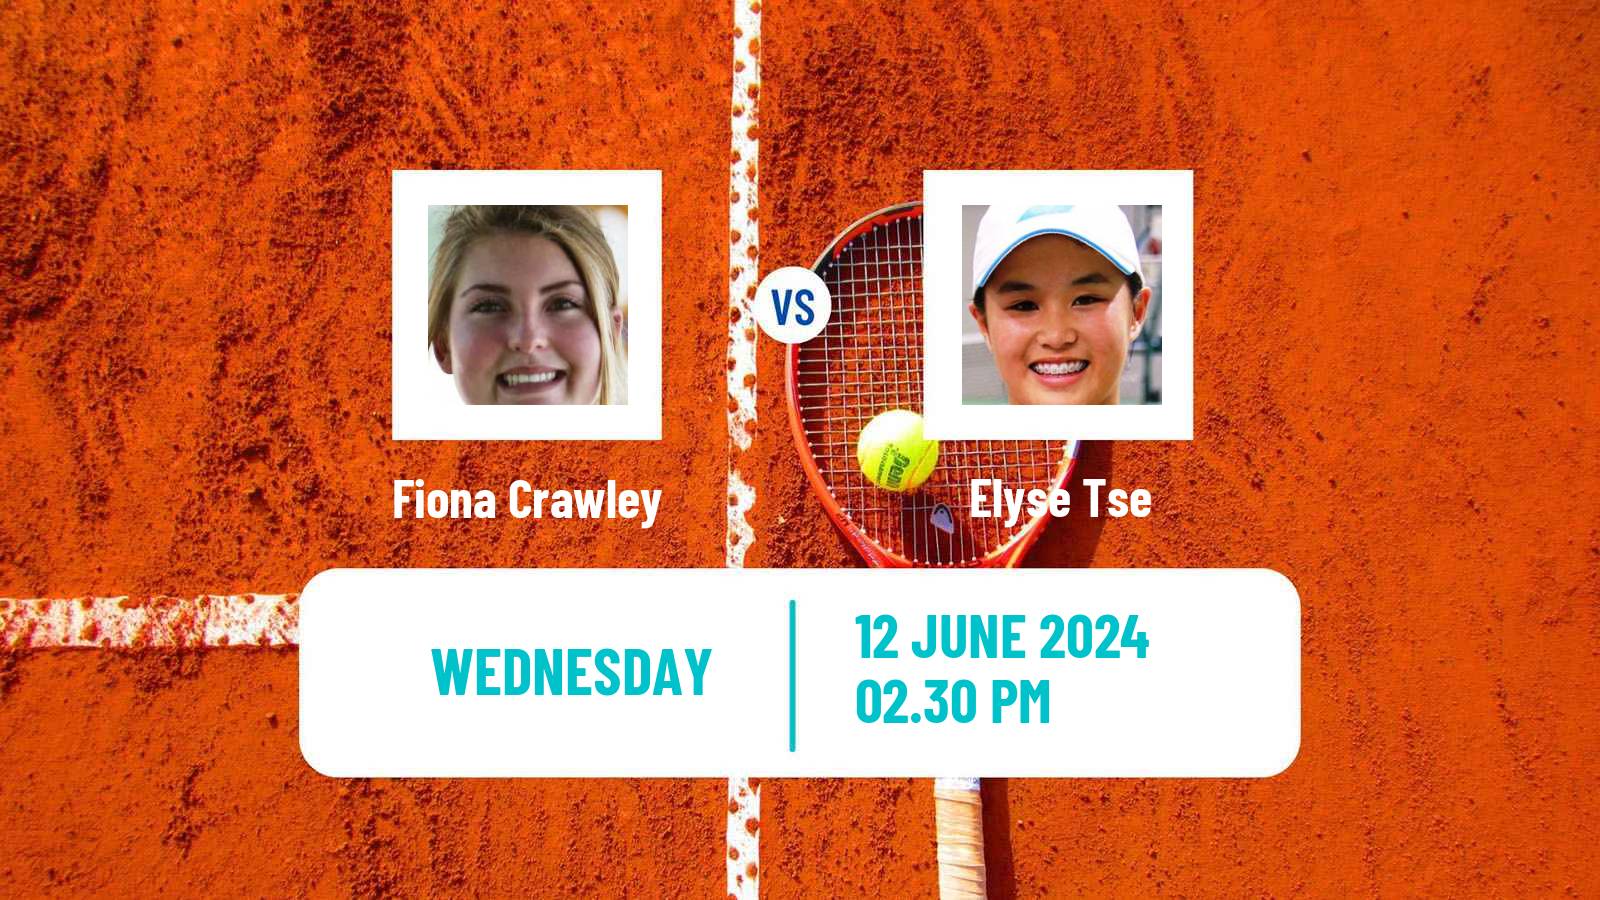 Tennis ITF W15 San Diego Ca 3 Women Fiona Crawley - Elyse Tse